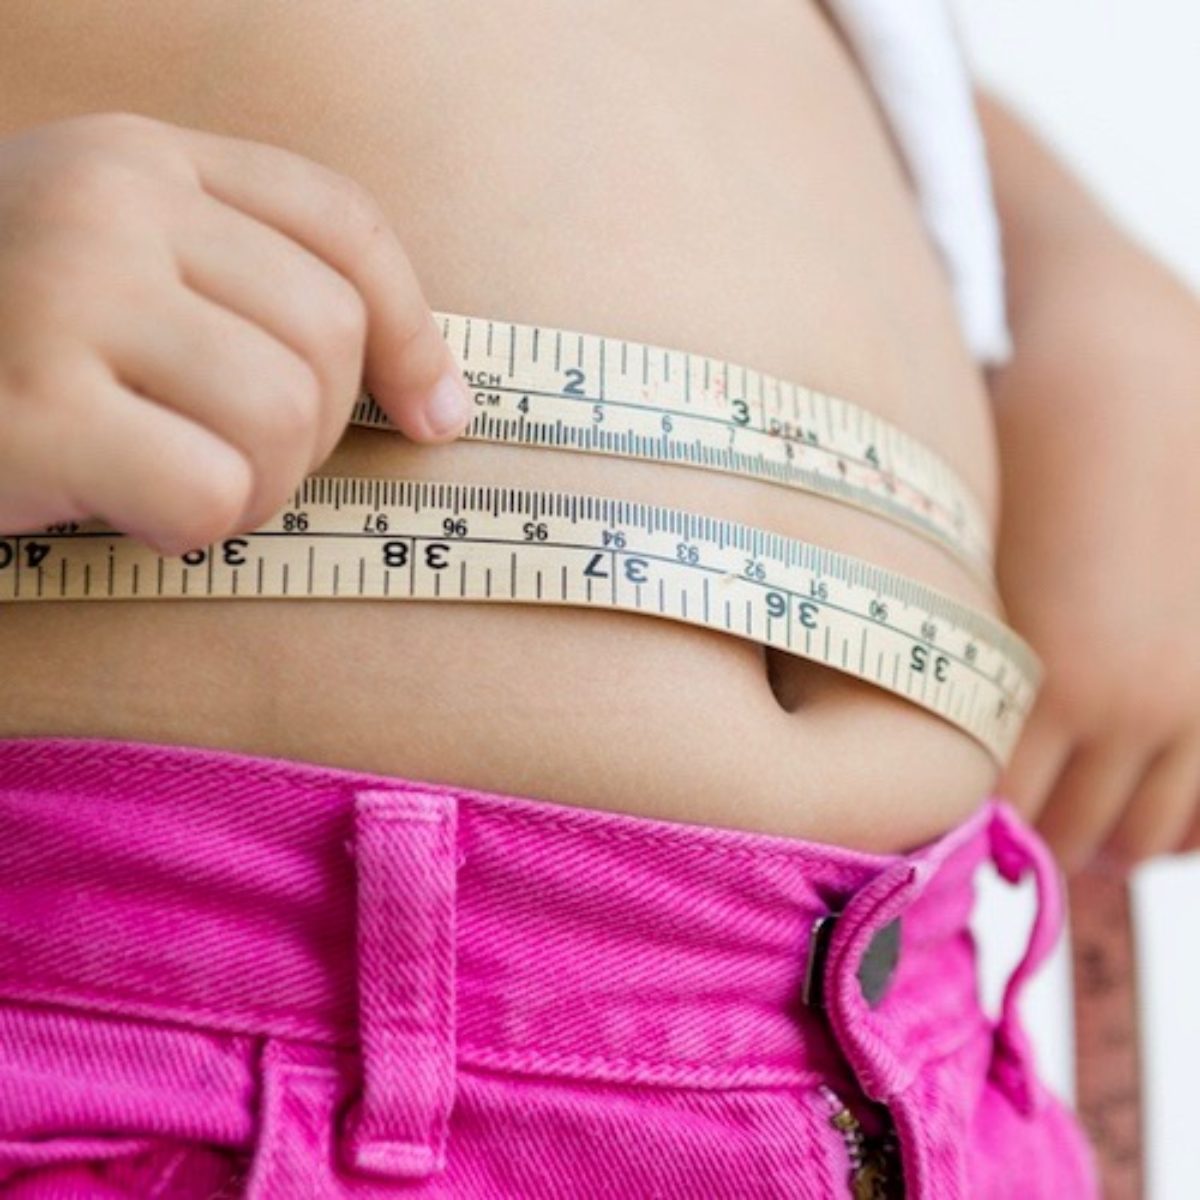 La cintura, su tamaño y su importancia en nuestra salud